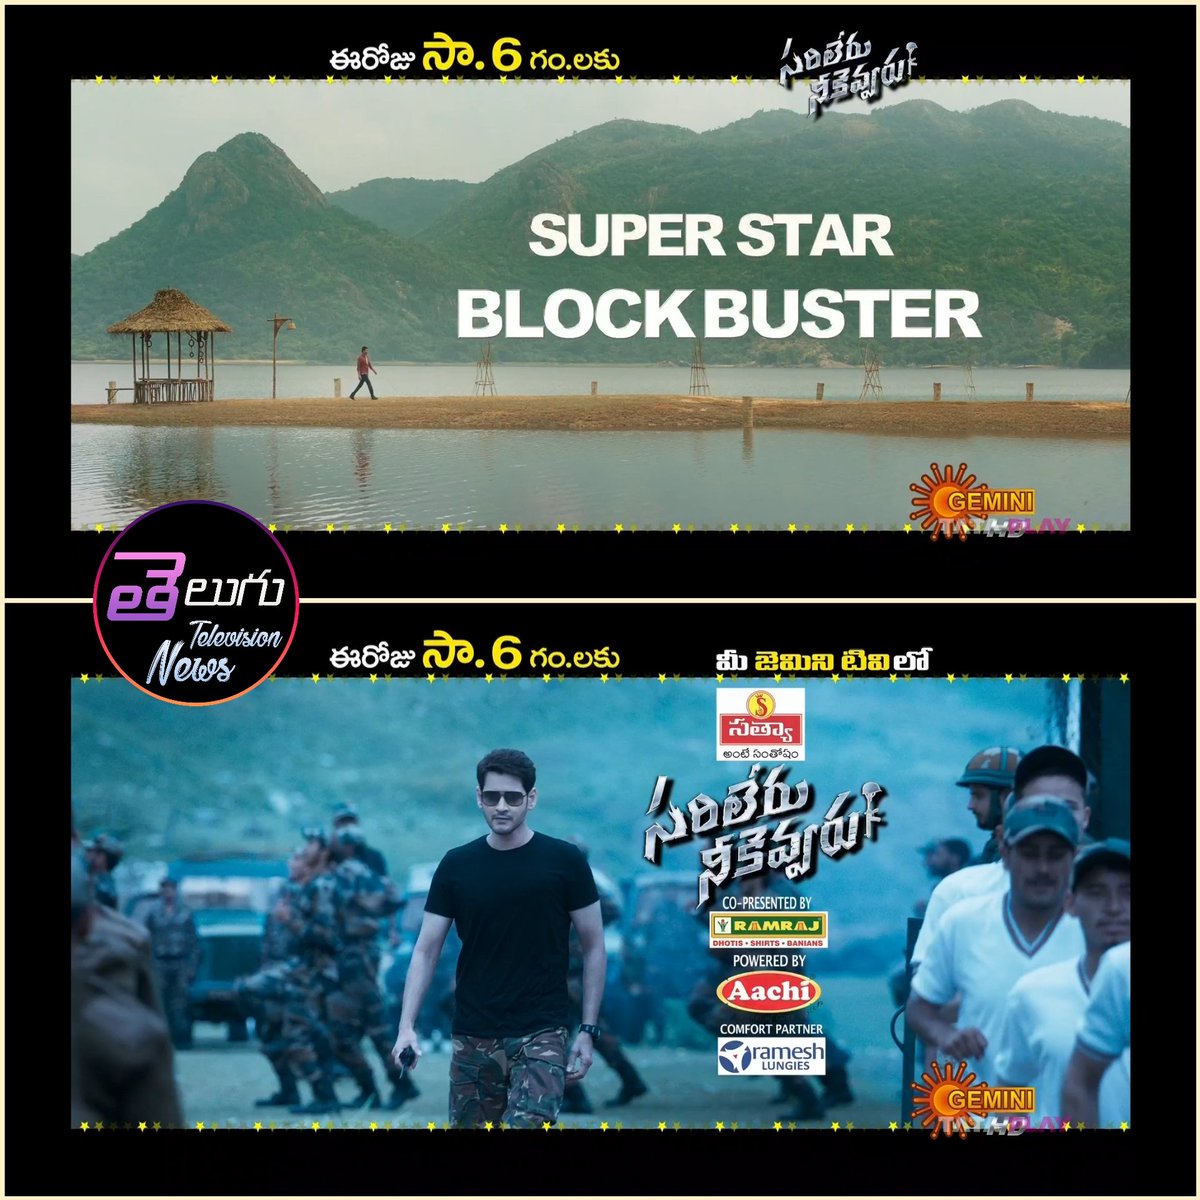 Super Star @urstrulyMahesh 's Blockbuster Movie
#SarileruNeekevvaru 
Today At 6pm On #GeminiTV 

#MaheshBabu #RashmikaMandanna #PrakashRaj #Vijayashanthi #SSMB29 @MaheshBabu_FC @MaheshBabuFacts @MaheshBabuNews